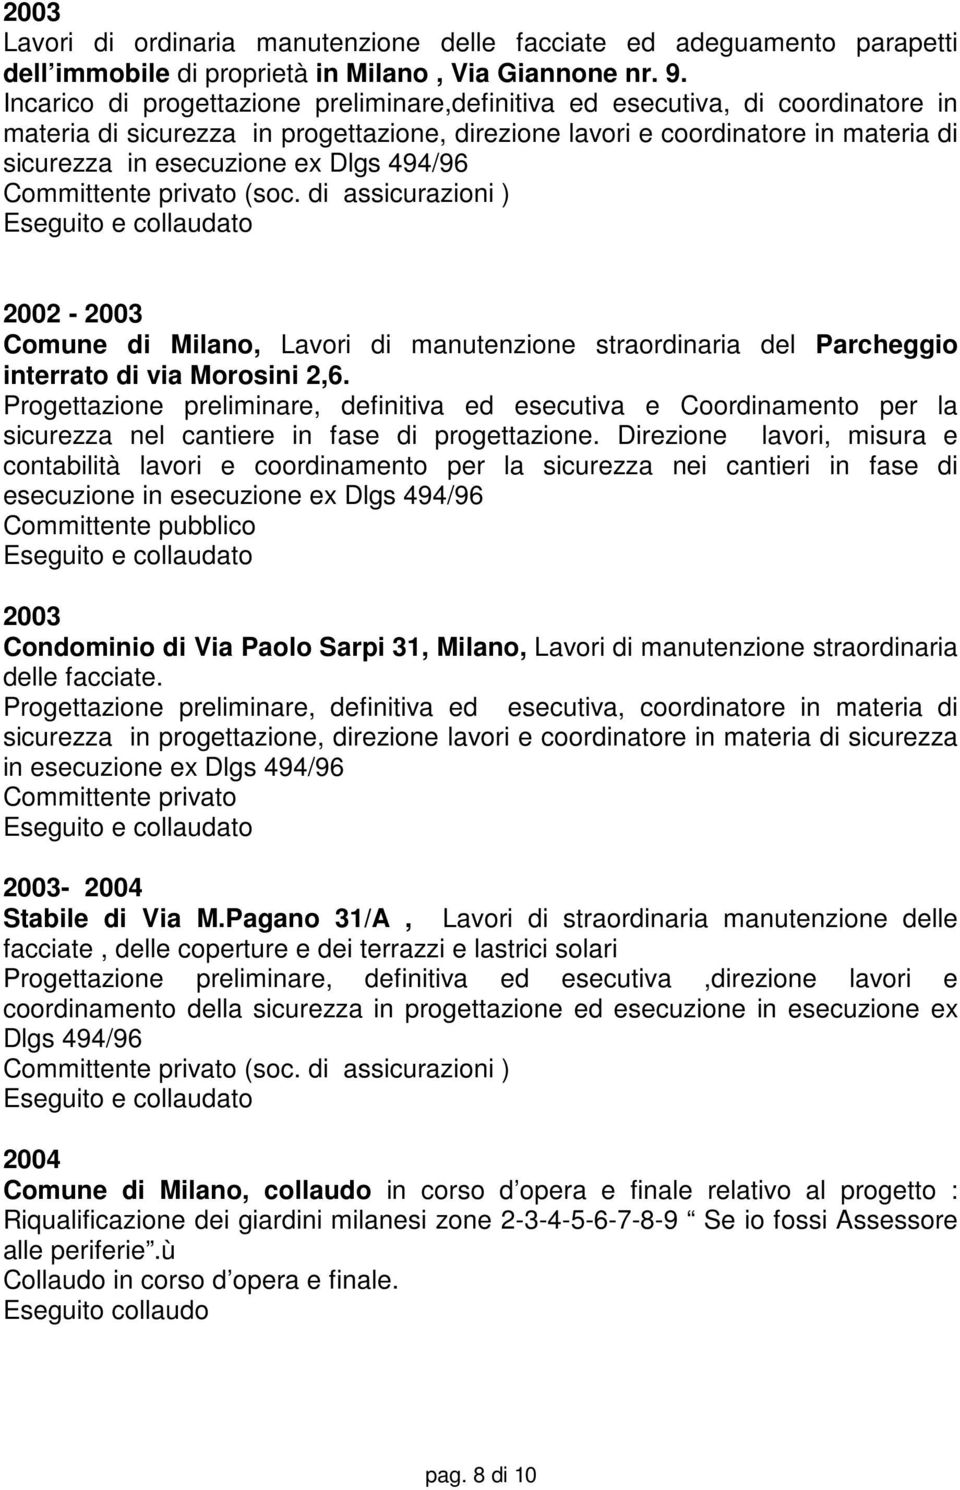 494/96 Committente privato (soc. di assicurazioni ) 2002-2003 Comune di Milano, Lavori di manutenzione straordinaria del Parcheggio interrato di via Morosini 2,6.